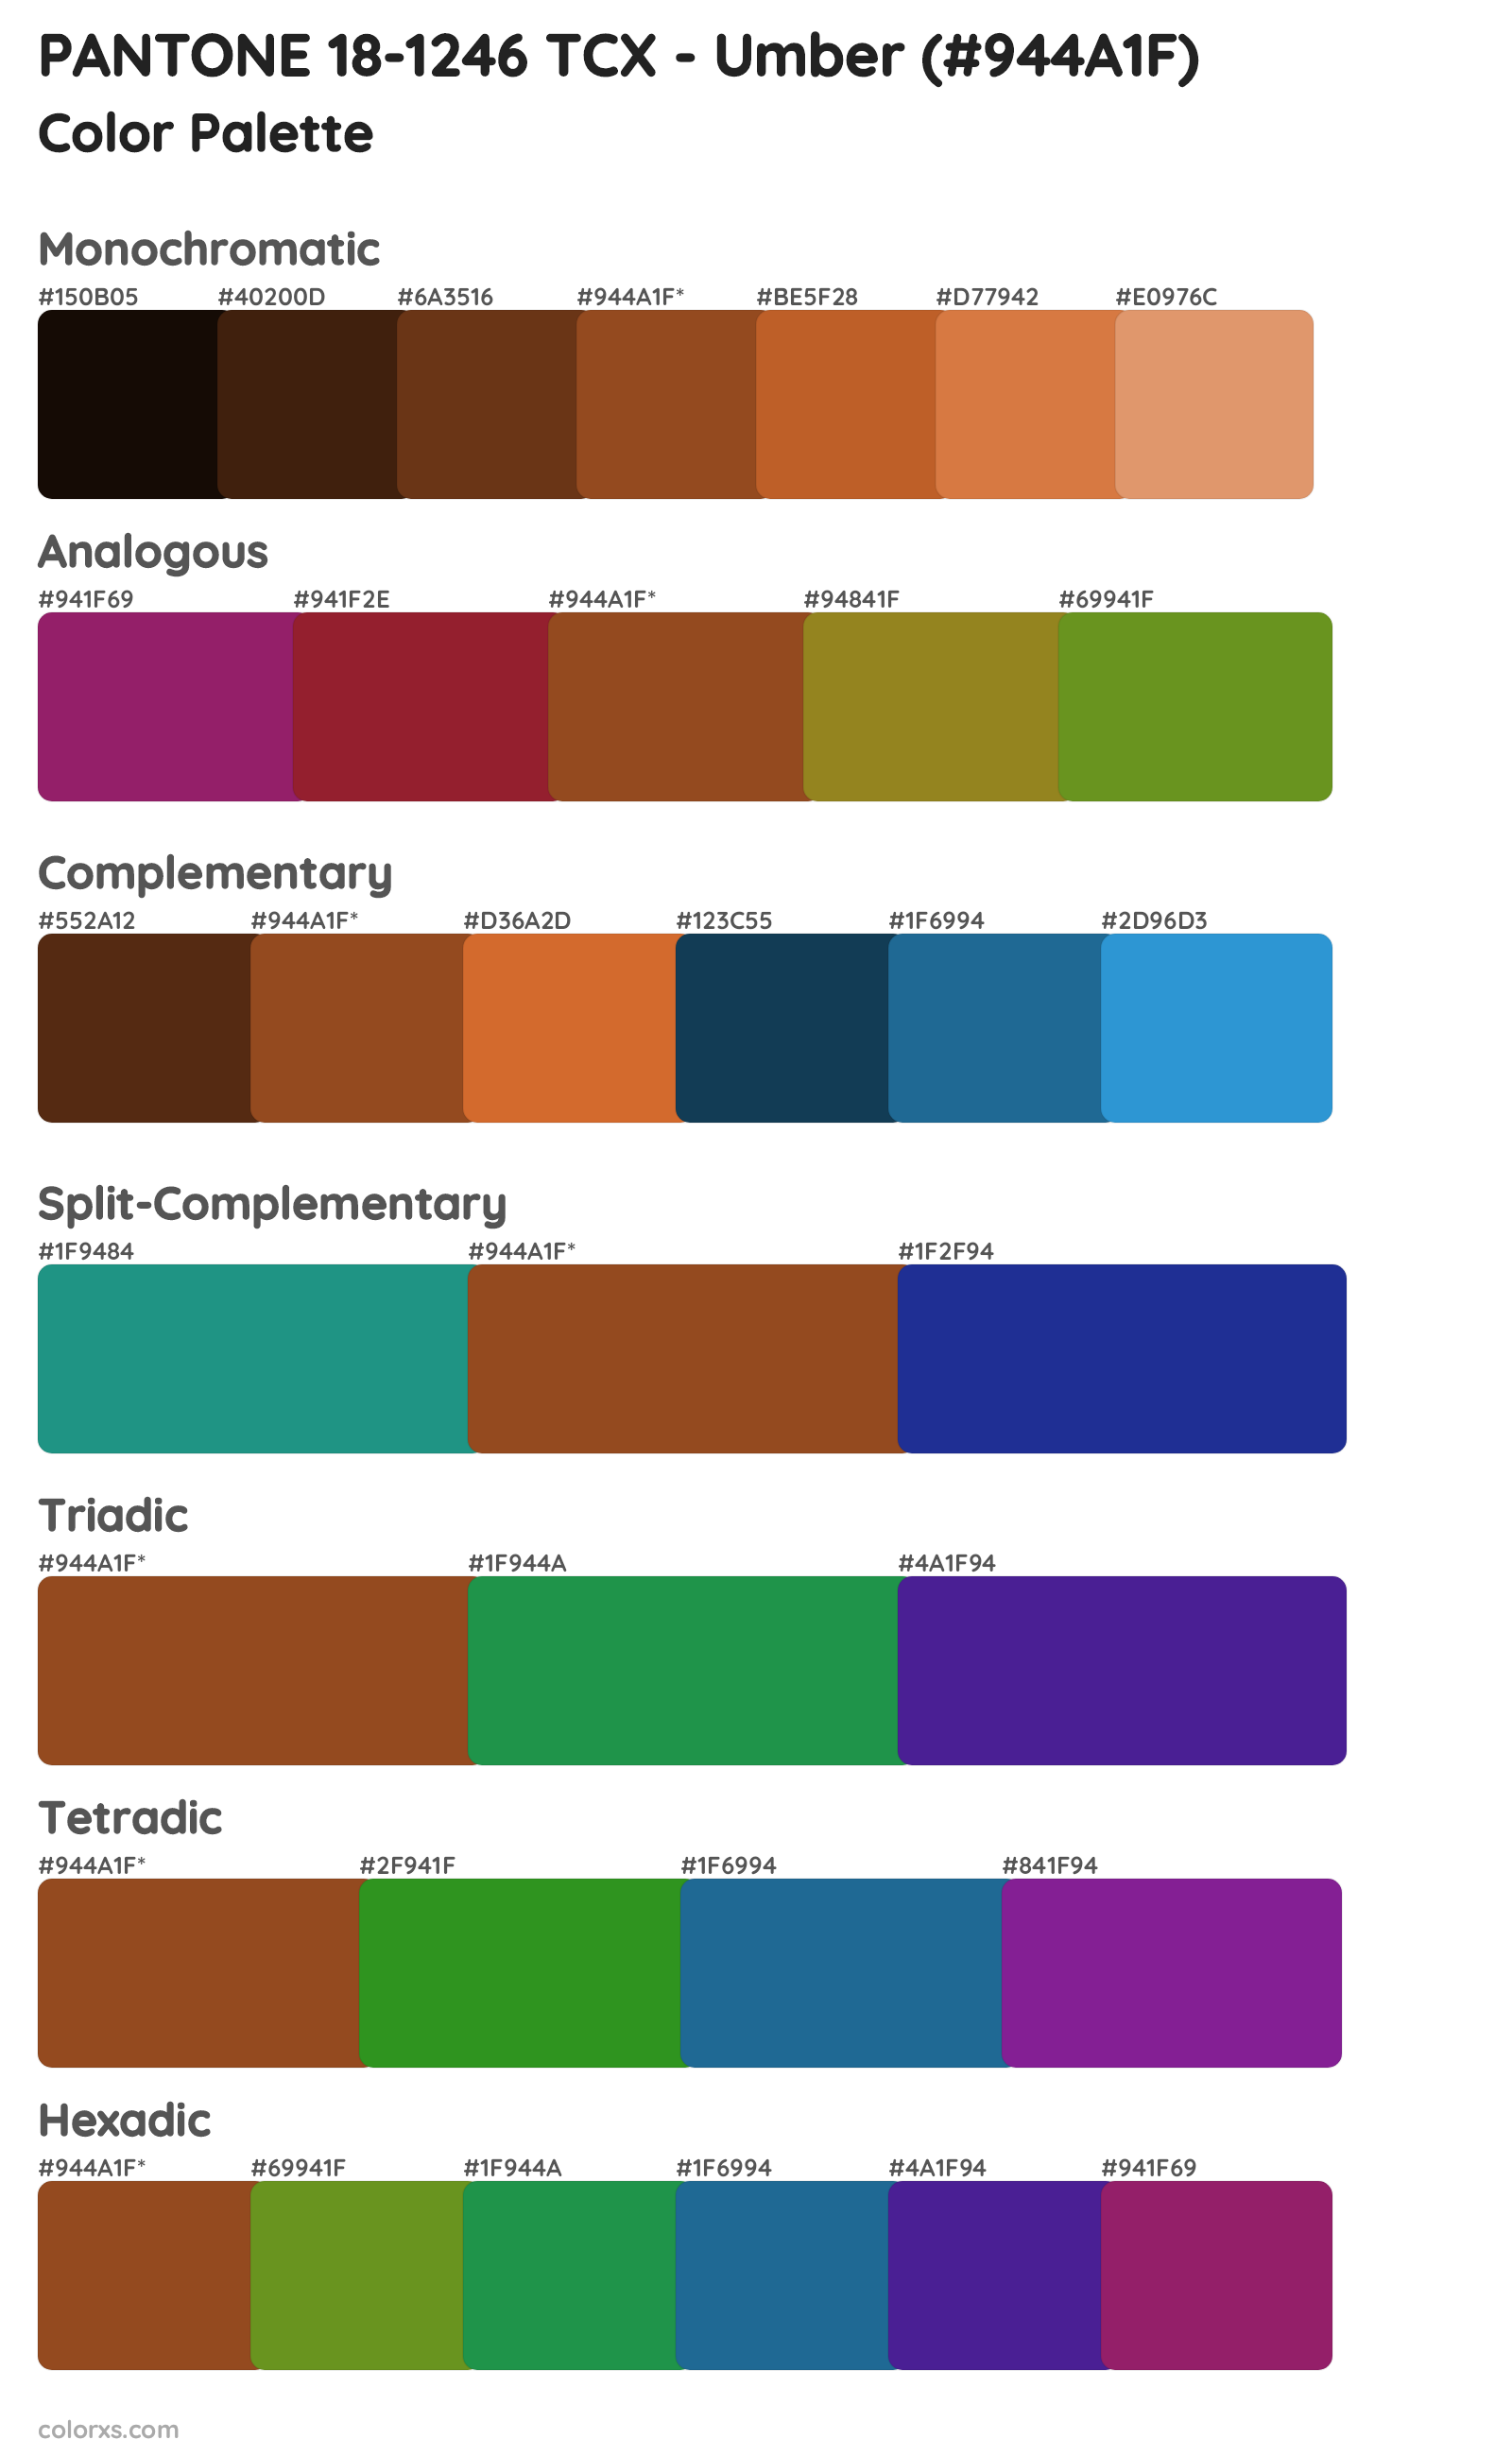 PANTONE 18-1246 TCX - Umber Color Scheme Palettes